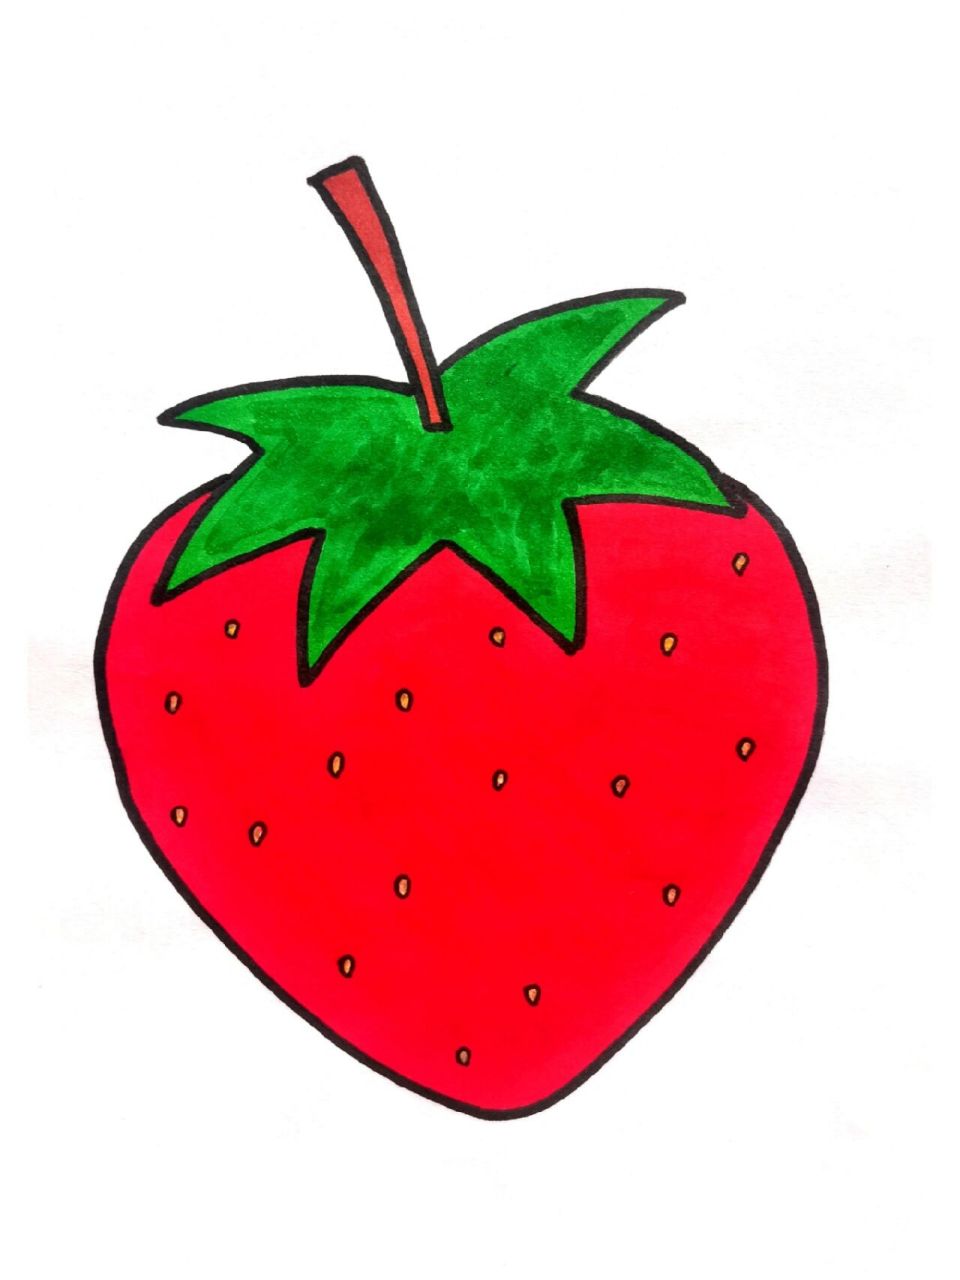 红色水果简笔画图片